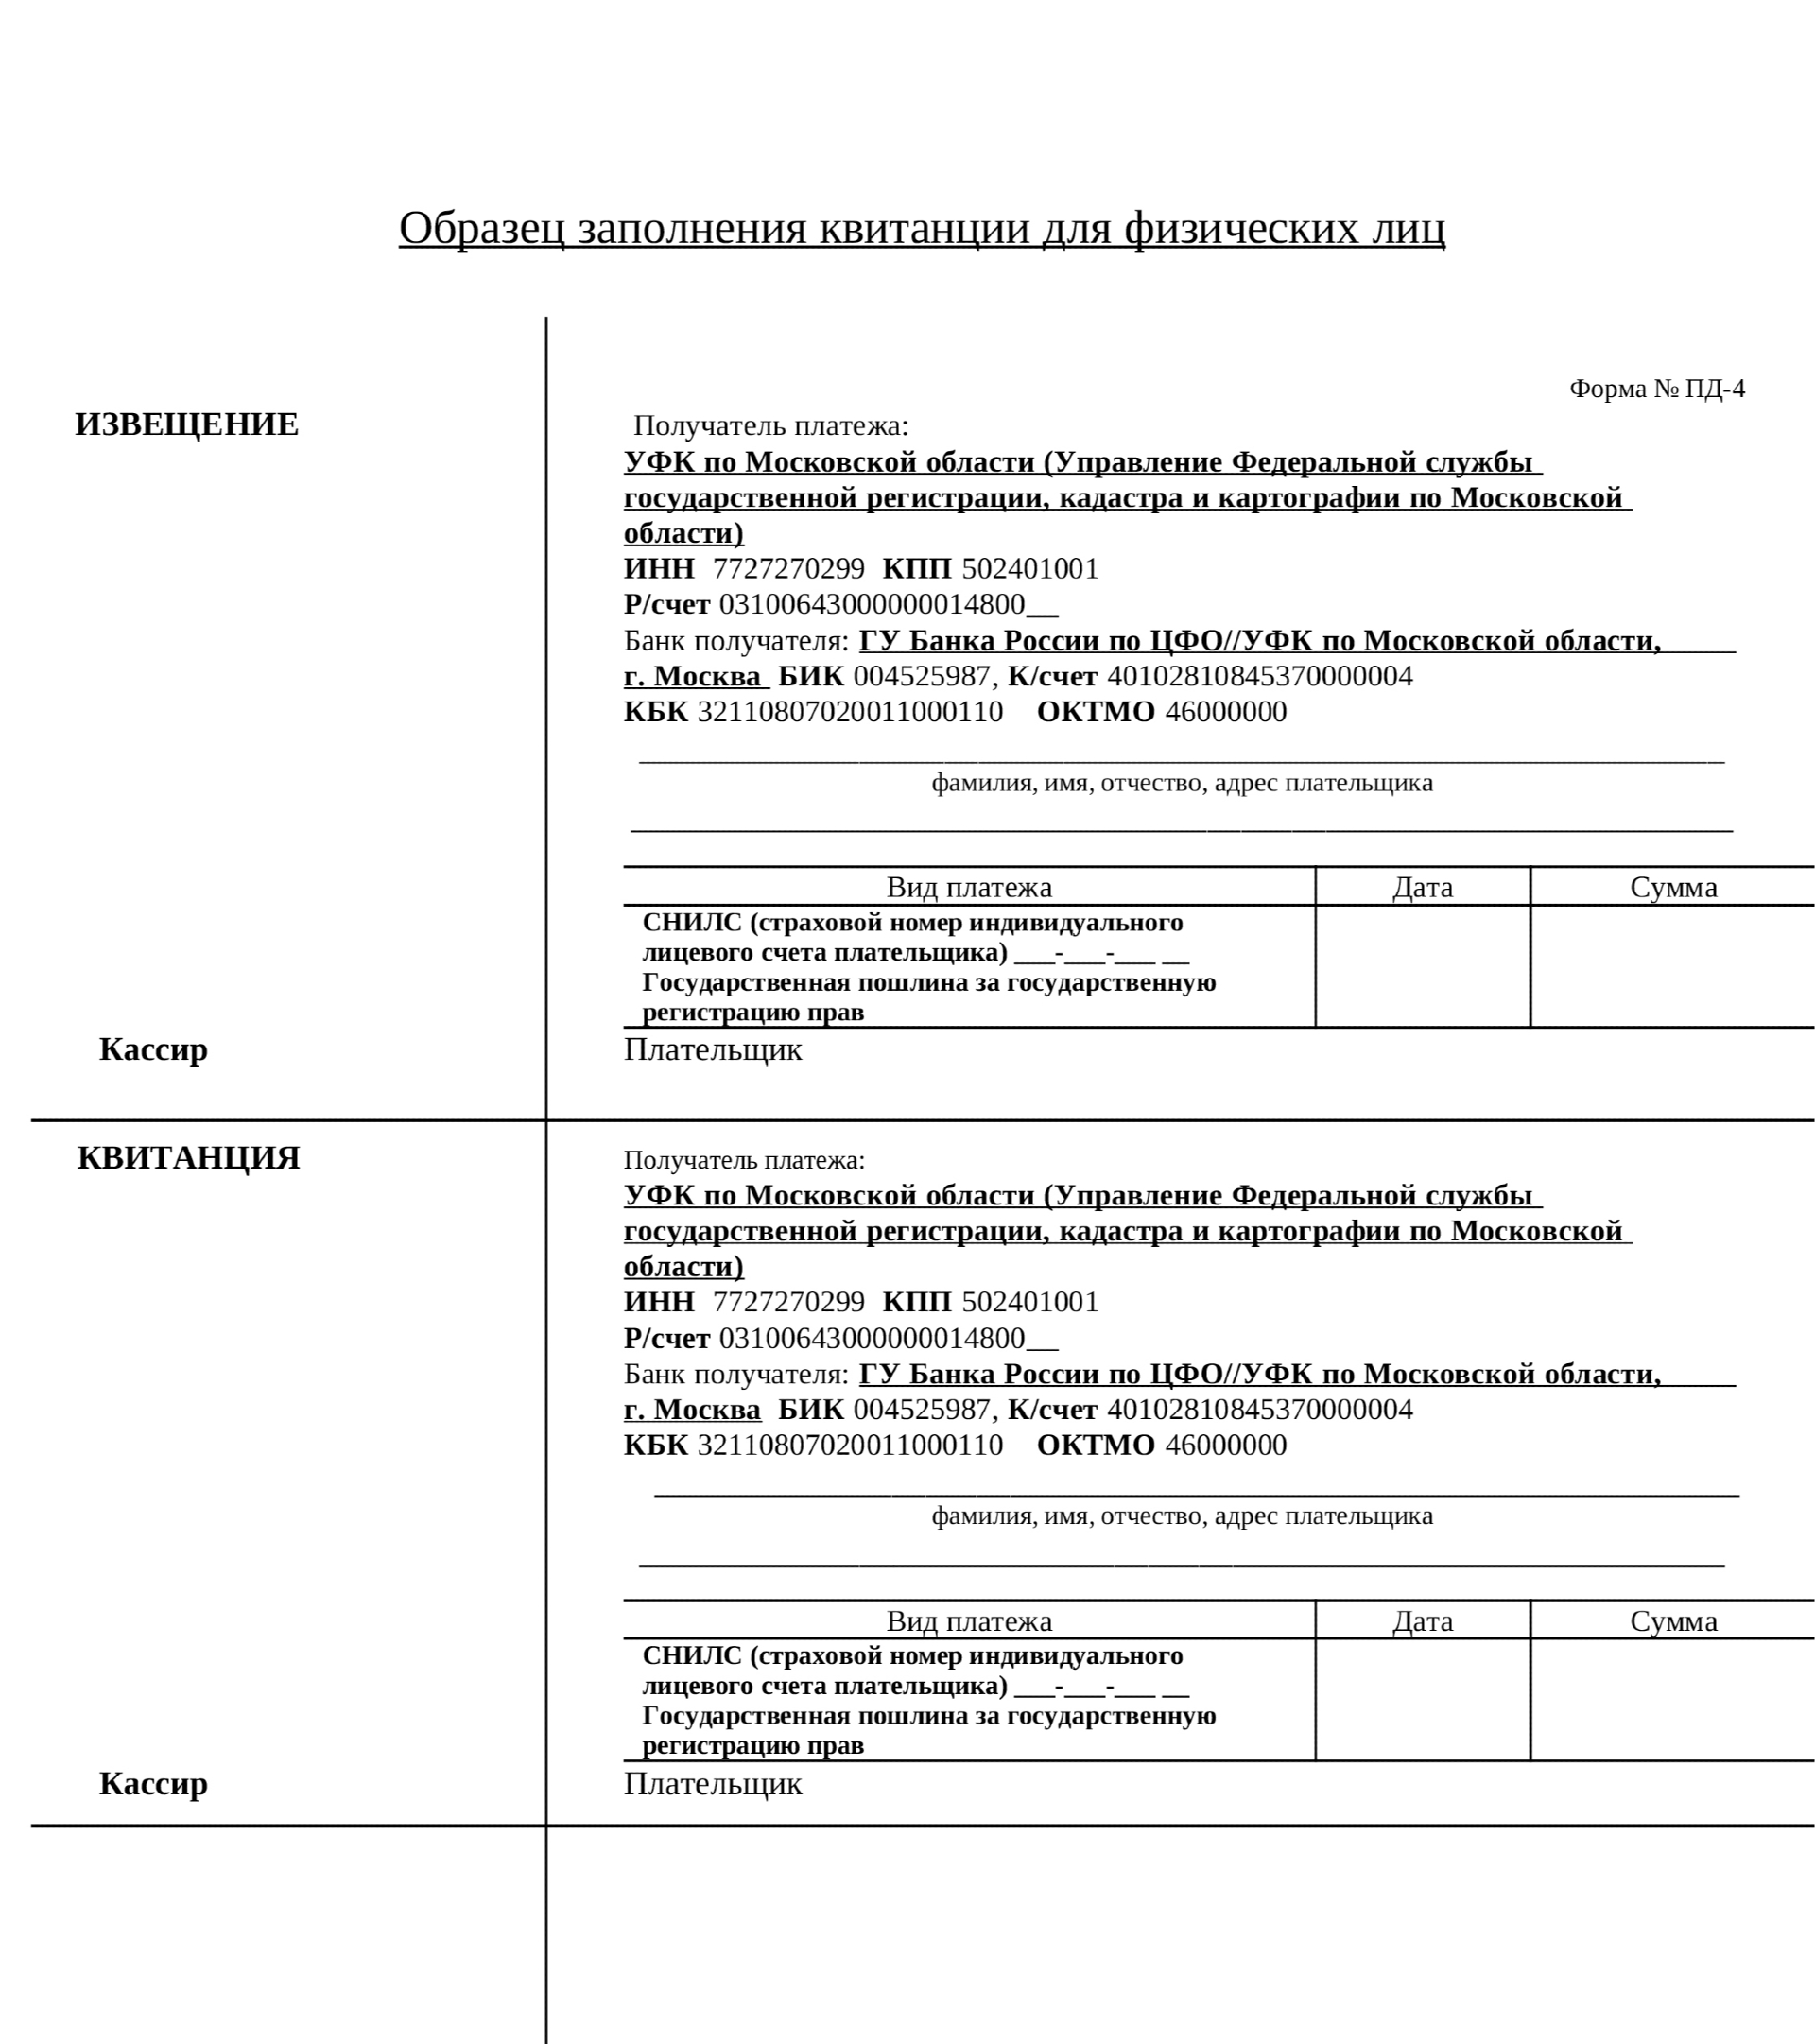 Бланк квитанции на оплату госпошлины (для физических лиц) при подаче заявления в МФЦ